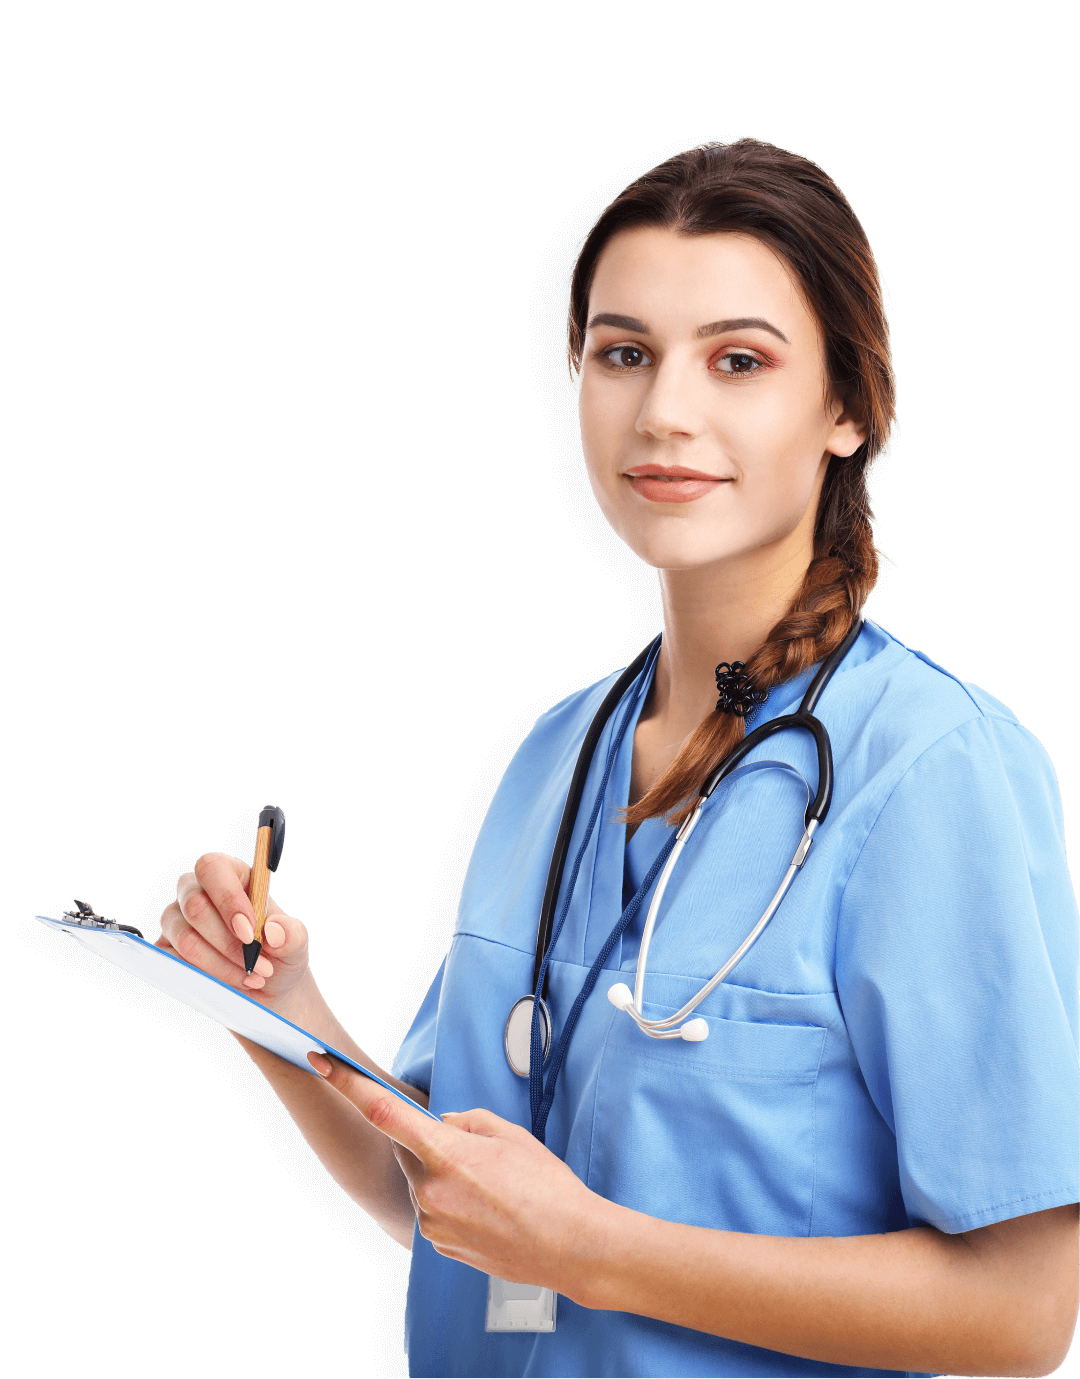 Nurse-Stroke Certified (SC-RN) professional